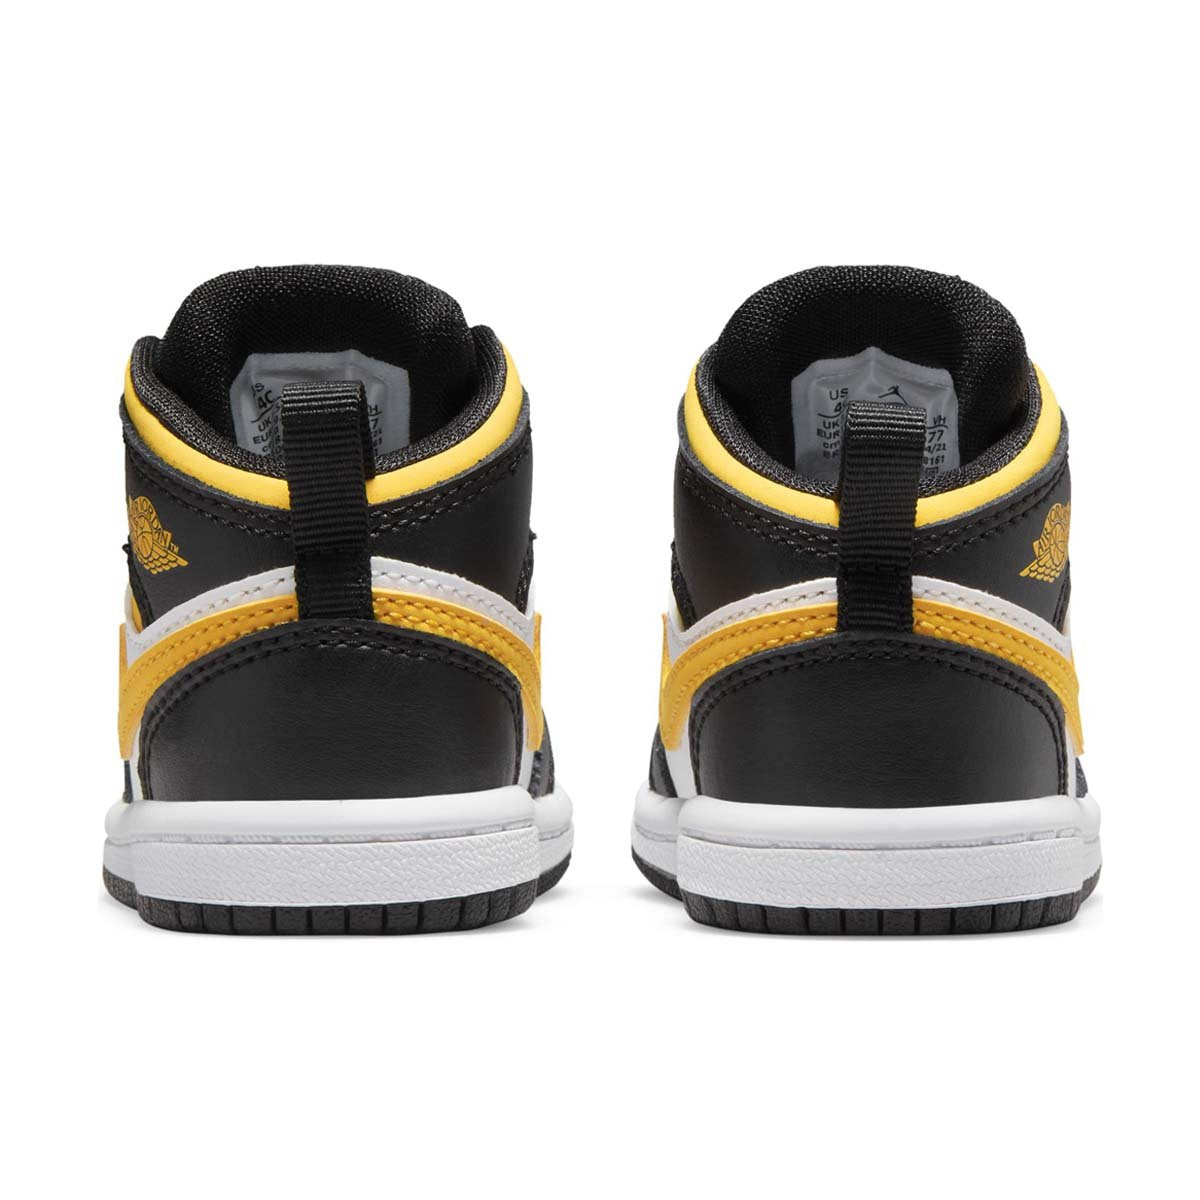 Jordan 1 Mid Infant/Toddler Shoes